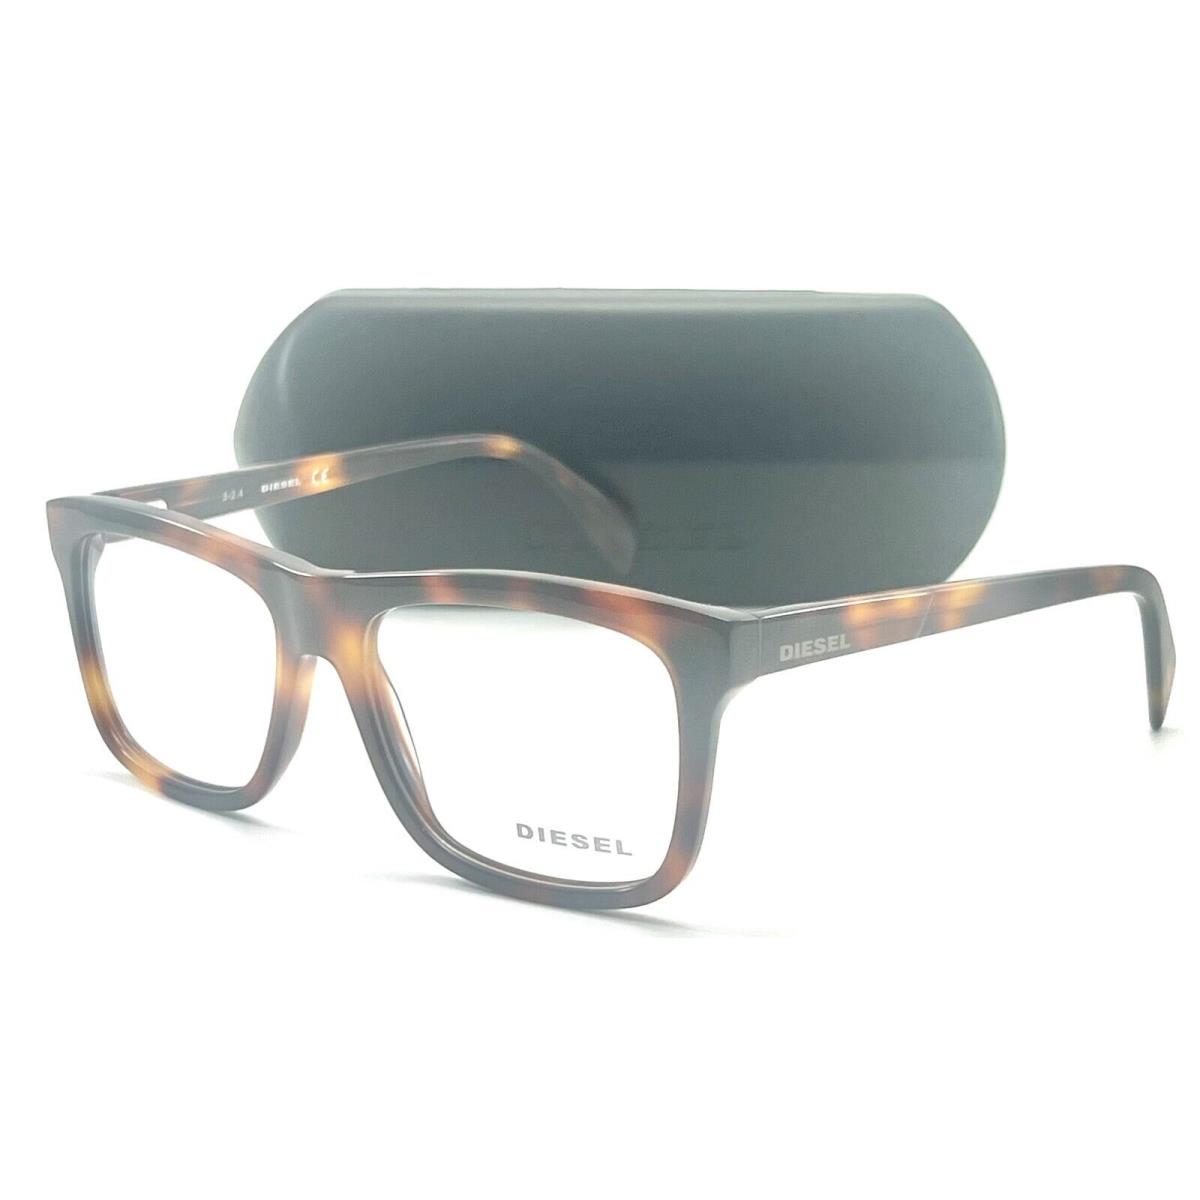 Diesel DL5118 053 Blonde Havana Eyeglasses 54-16 145 W/case